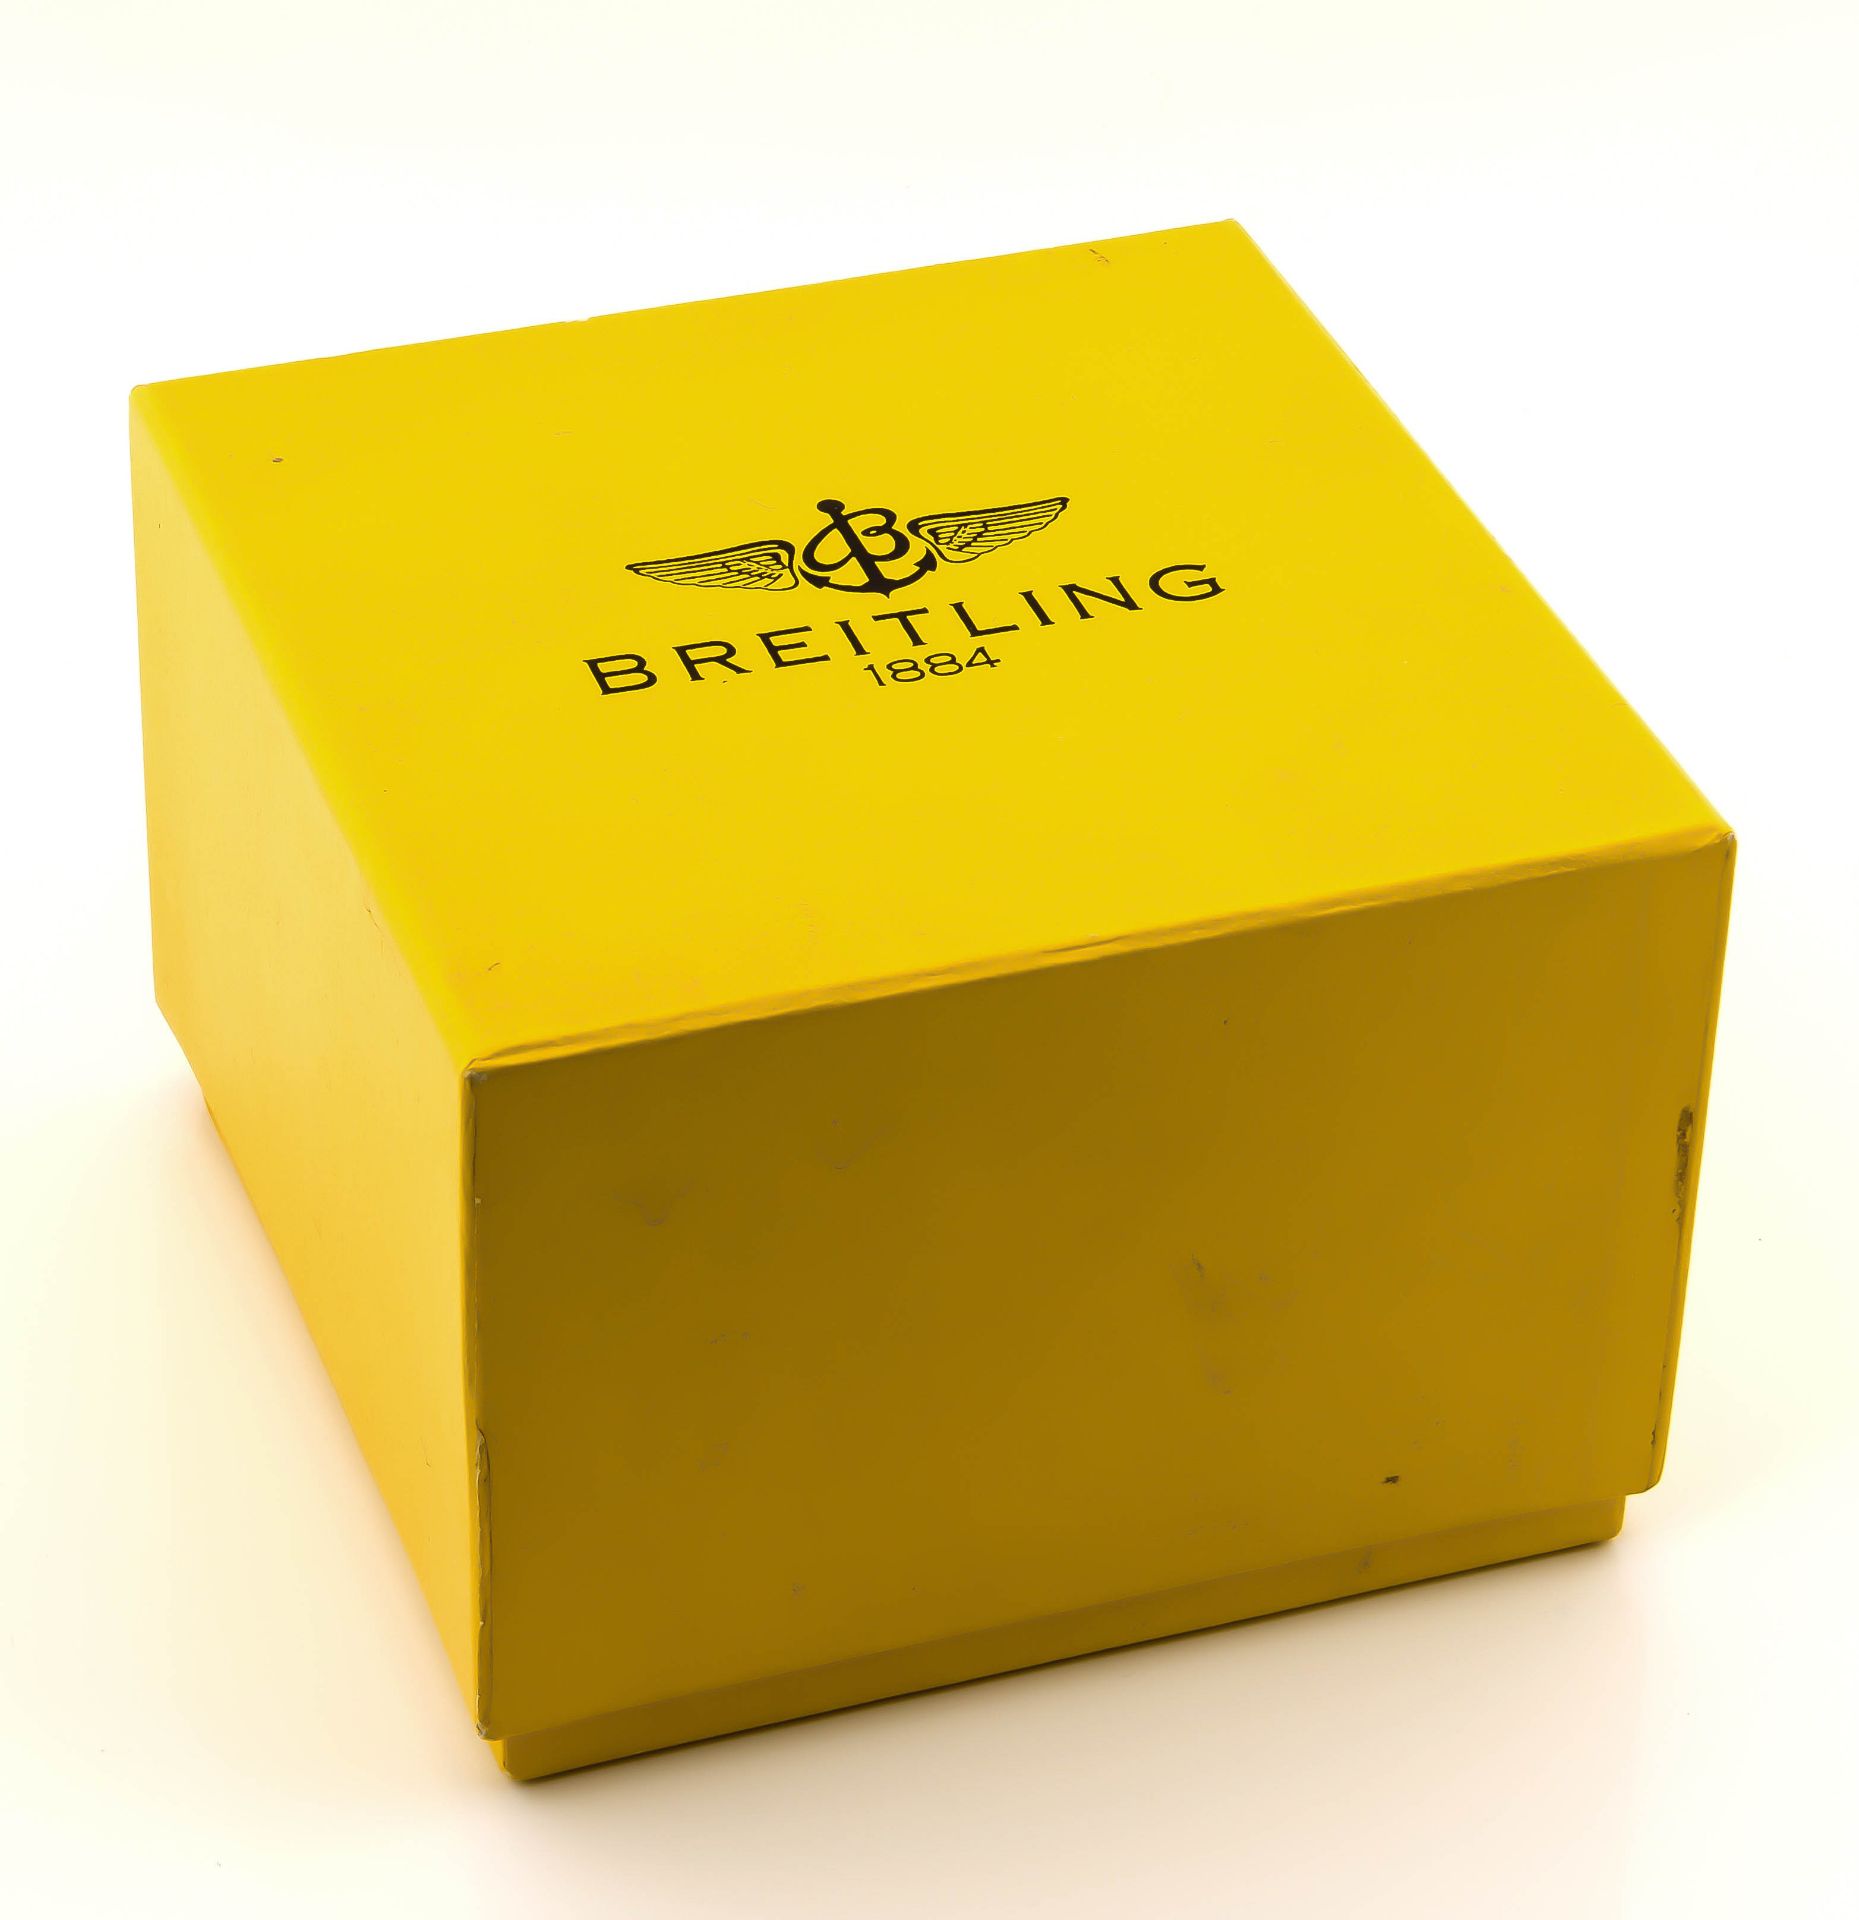 Breitling Herrenarmbanduhr Chrono-Astromat Longitude Stahl/Gold 750/000 Automatik mitDatum, Sekunde, - Image 6 of 6